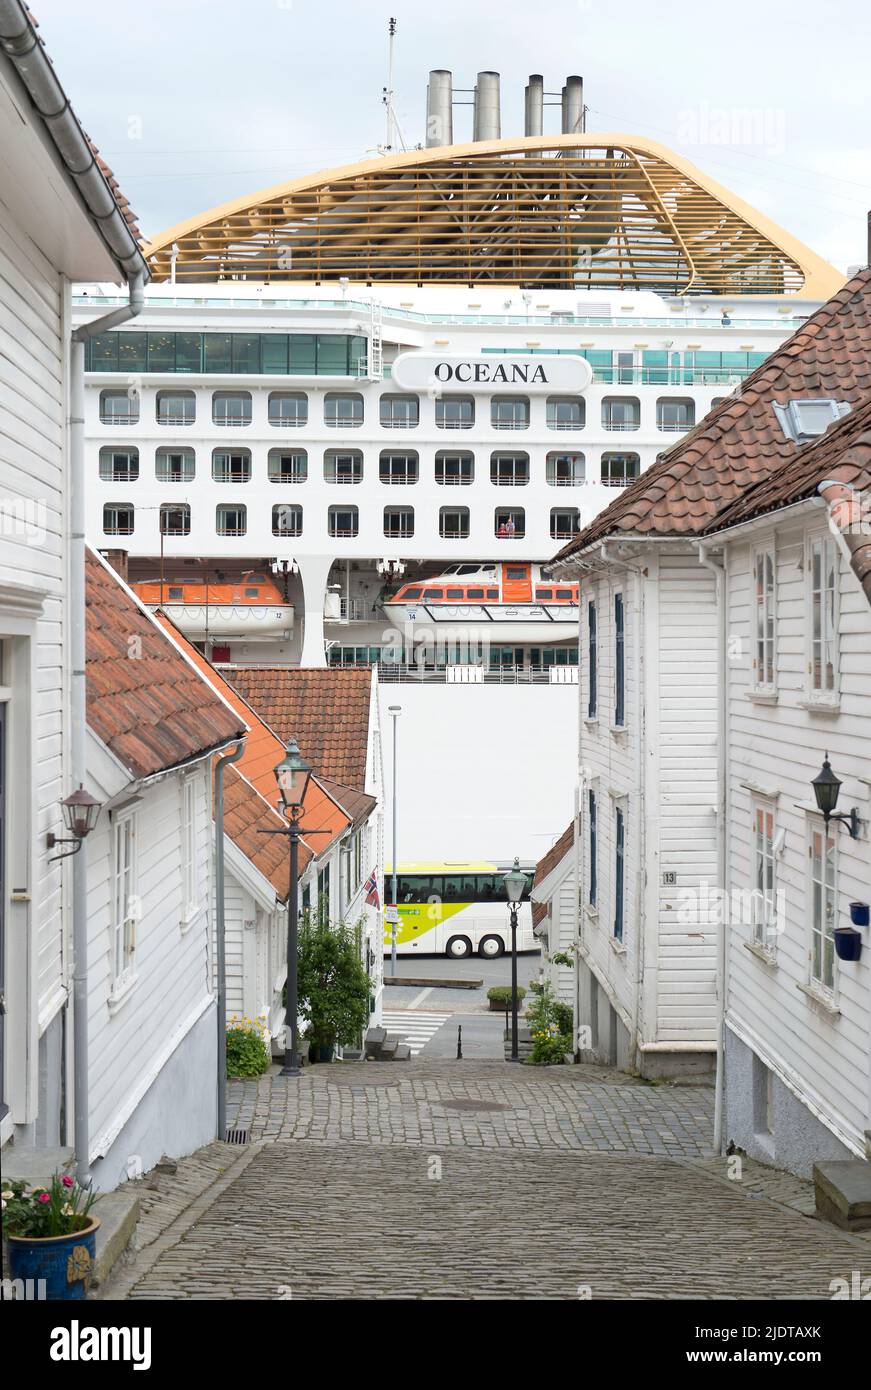 Case e strade strette nella parte vecchia di Stavanger, Norvegia, localmente conosciuta come 'Gamle Stavanger'. I 173 edifici risalgono al 1700 e 1800 cent Foto Stock